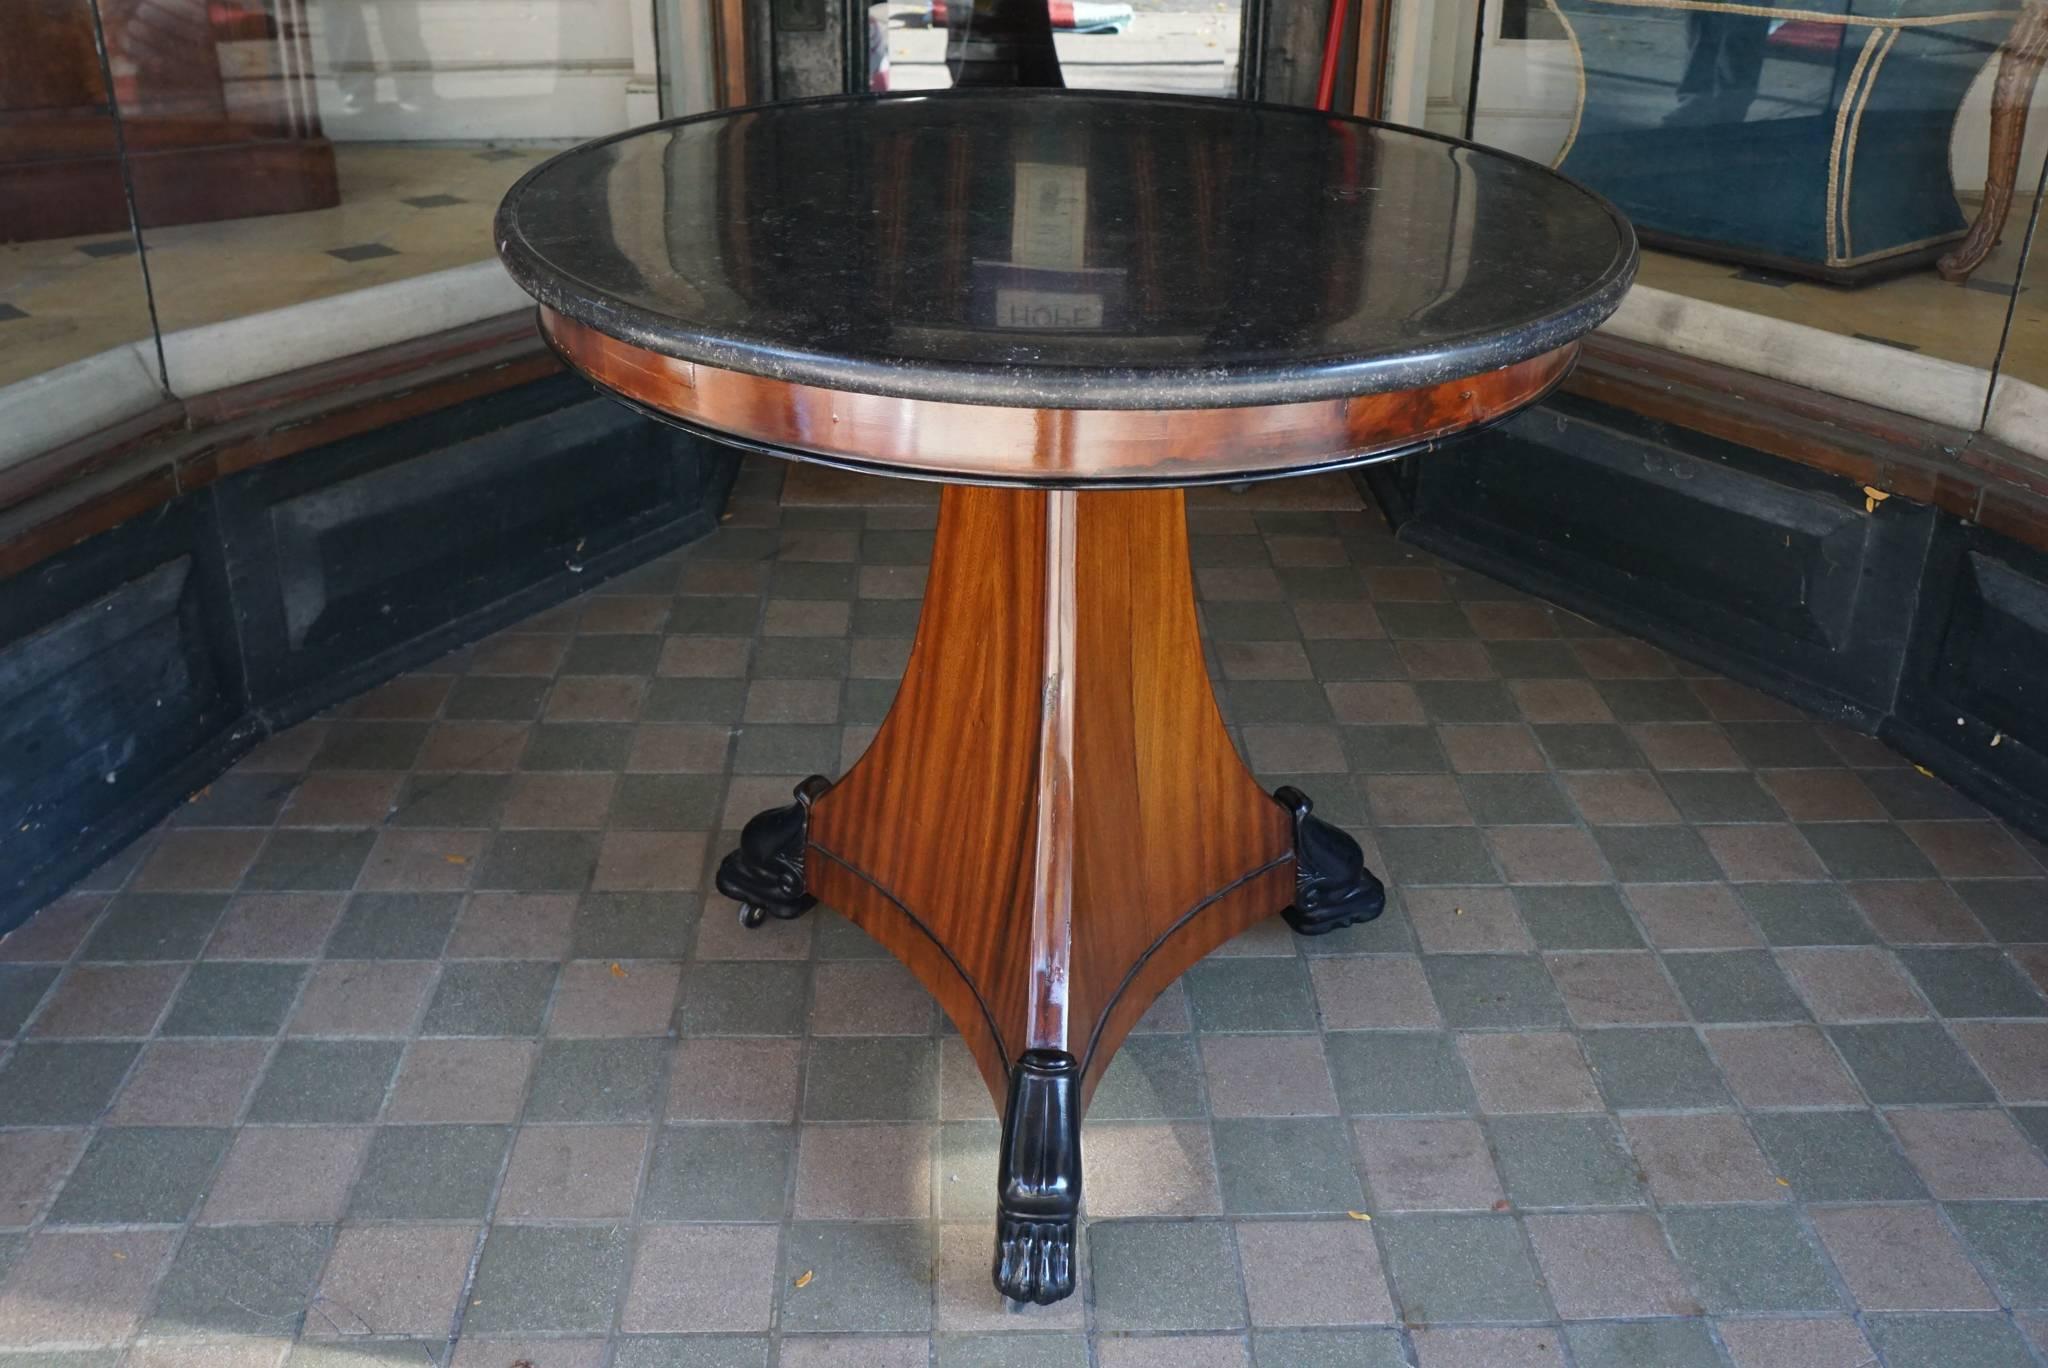 Dieser Empire-Tisch wurde um 1815 in Frankreich hergestellt, ist aus importiertem Mahagoni gefertigt und im antiken Stil gehalten. Dieses kleine Exemplar ist aus Mahagonifurnieren gefertigt und steht auf einem geschwungenen, dreieckigen Sockel, der